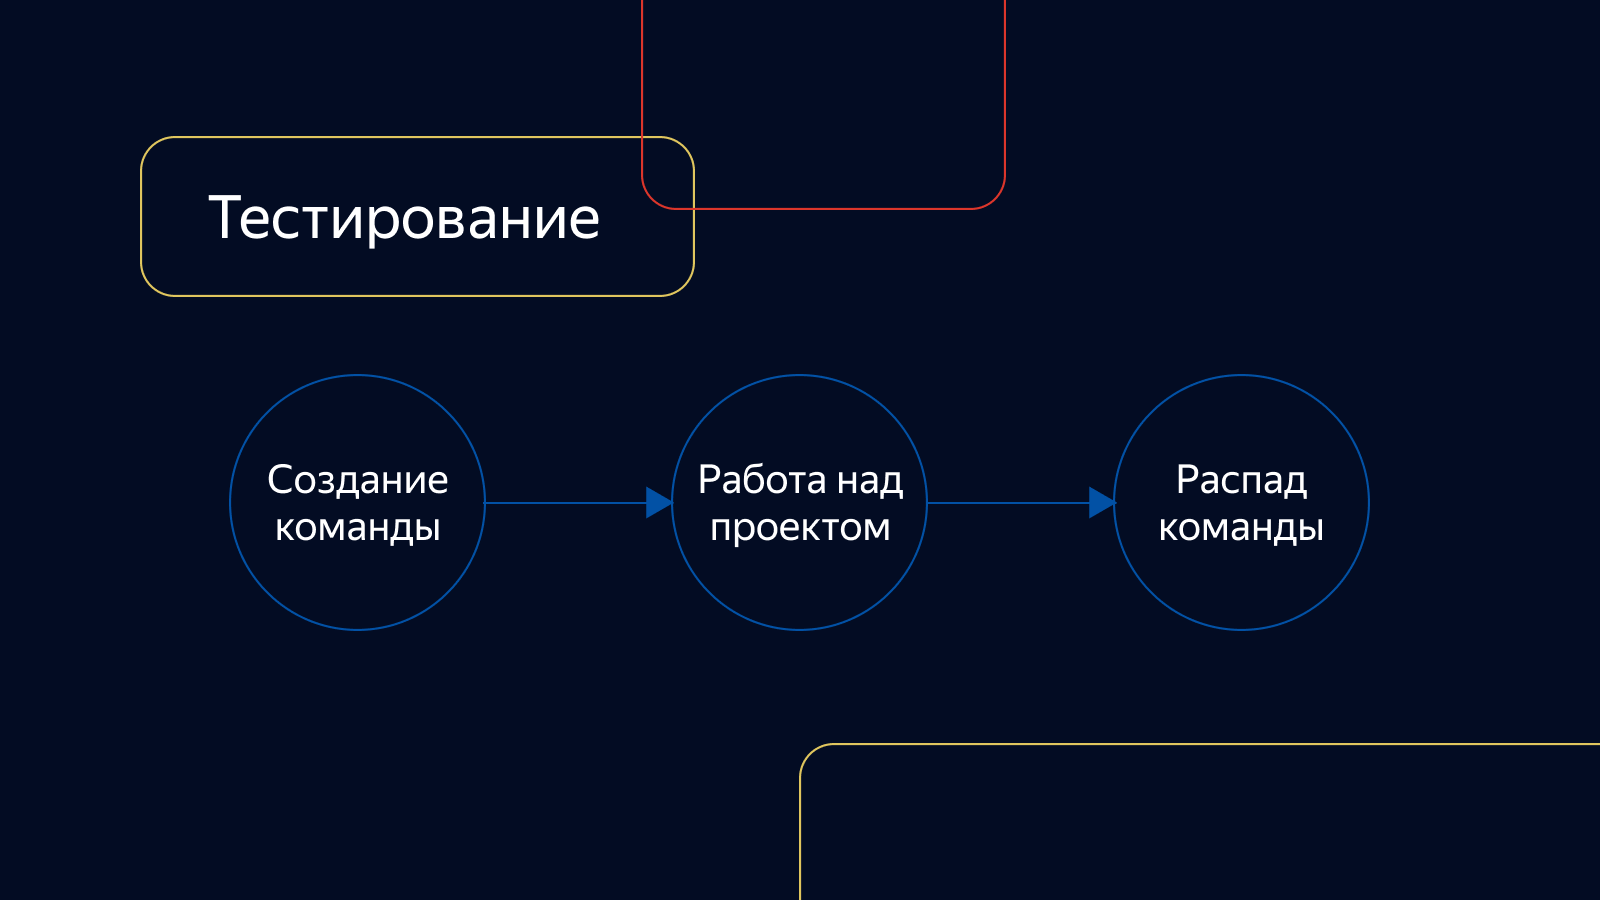 Как устроено тестирование фронтенда в Яндекс.Маркете и почему мы отказываемся от еженедельных релизов - 2